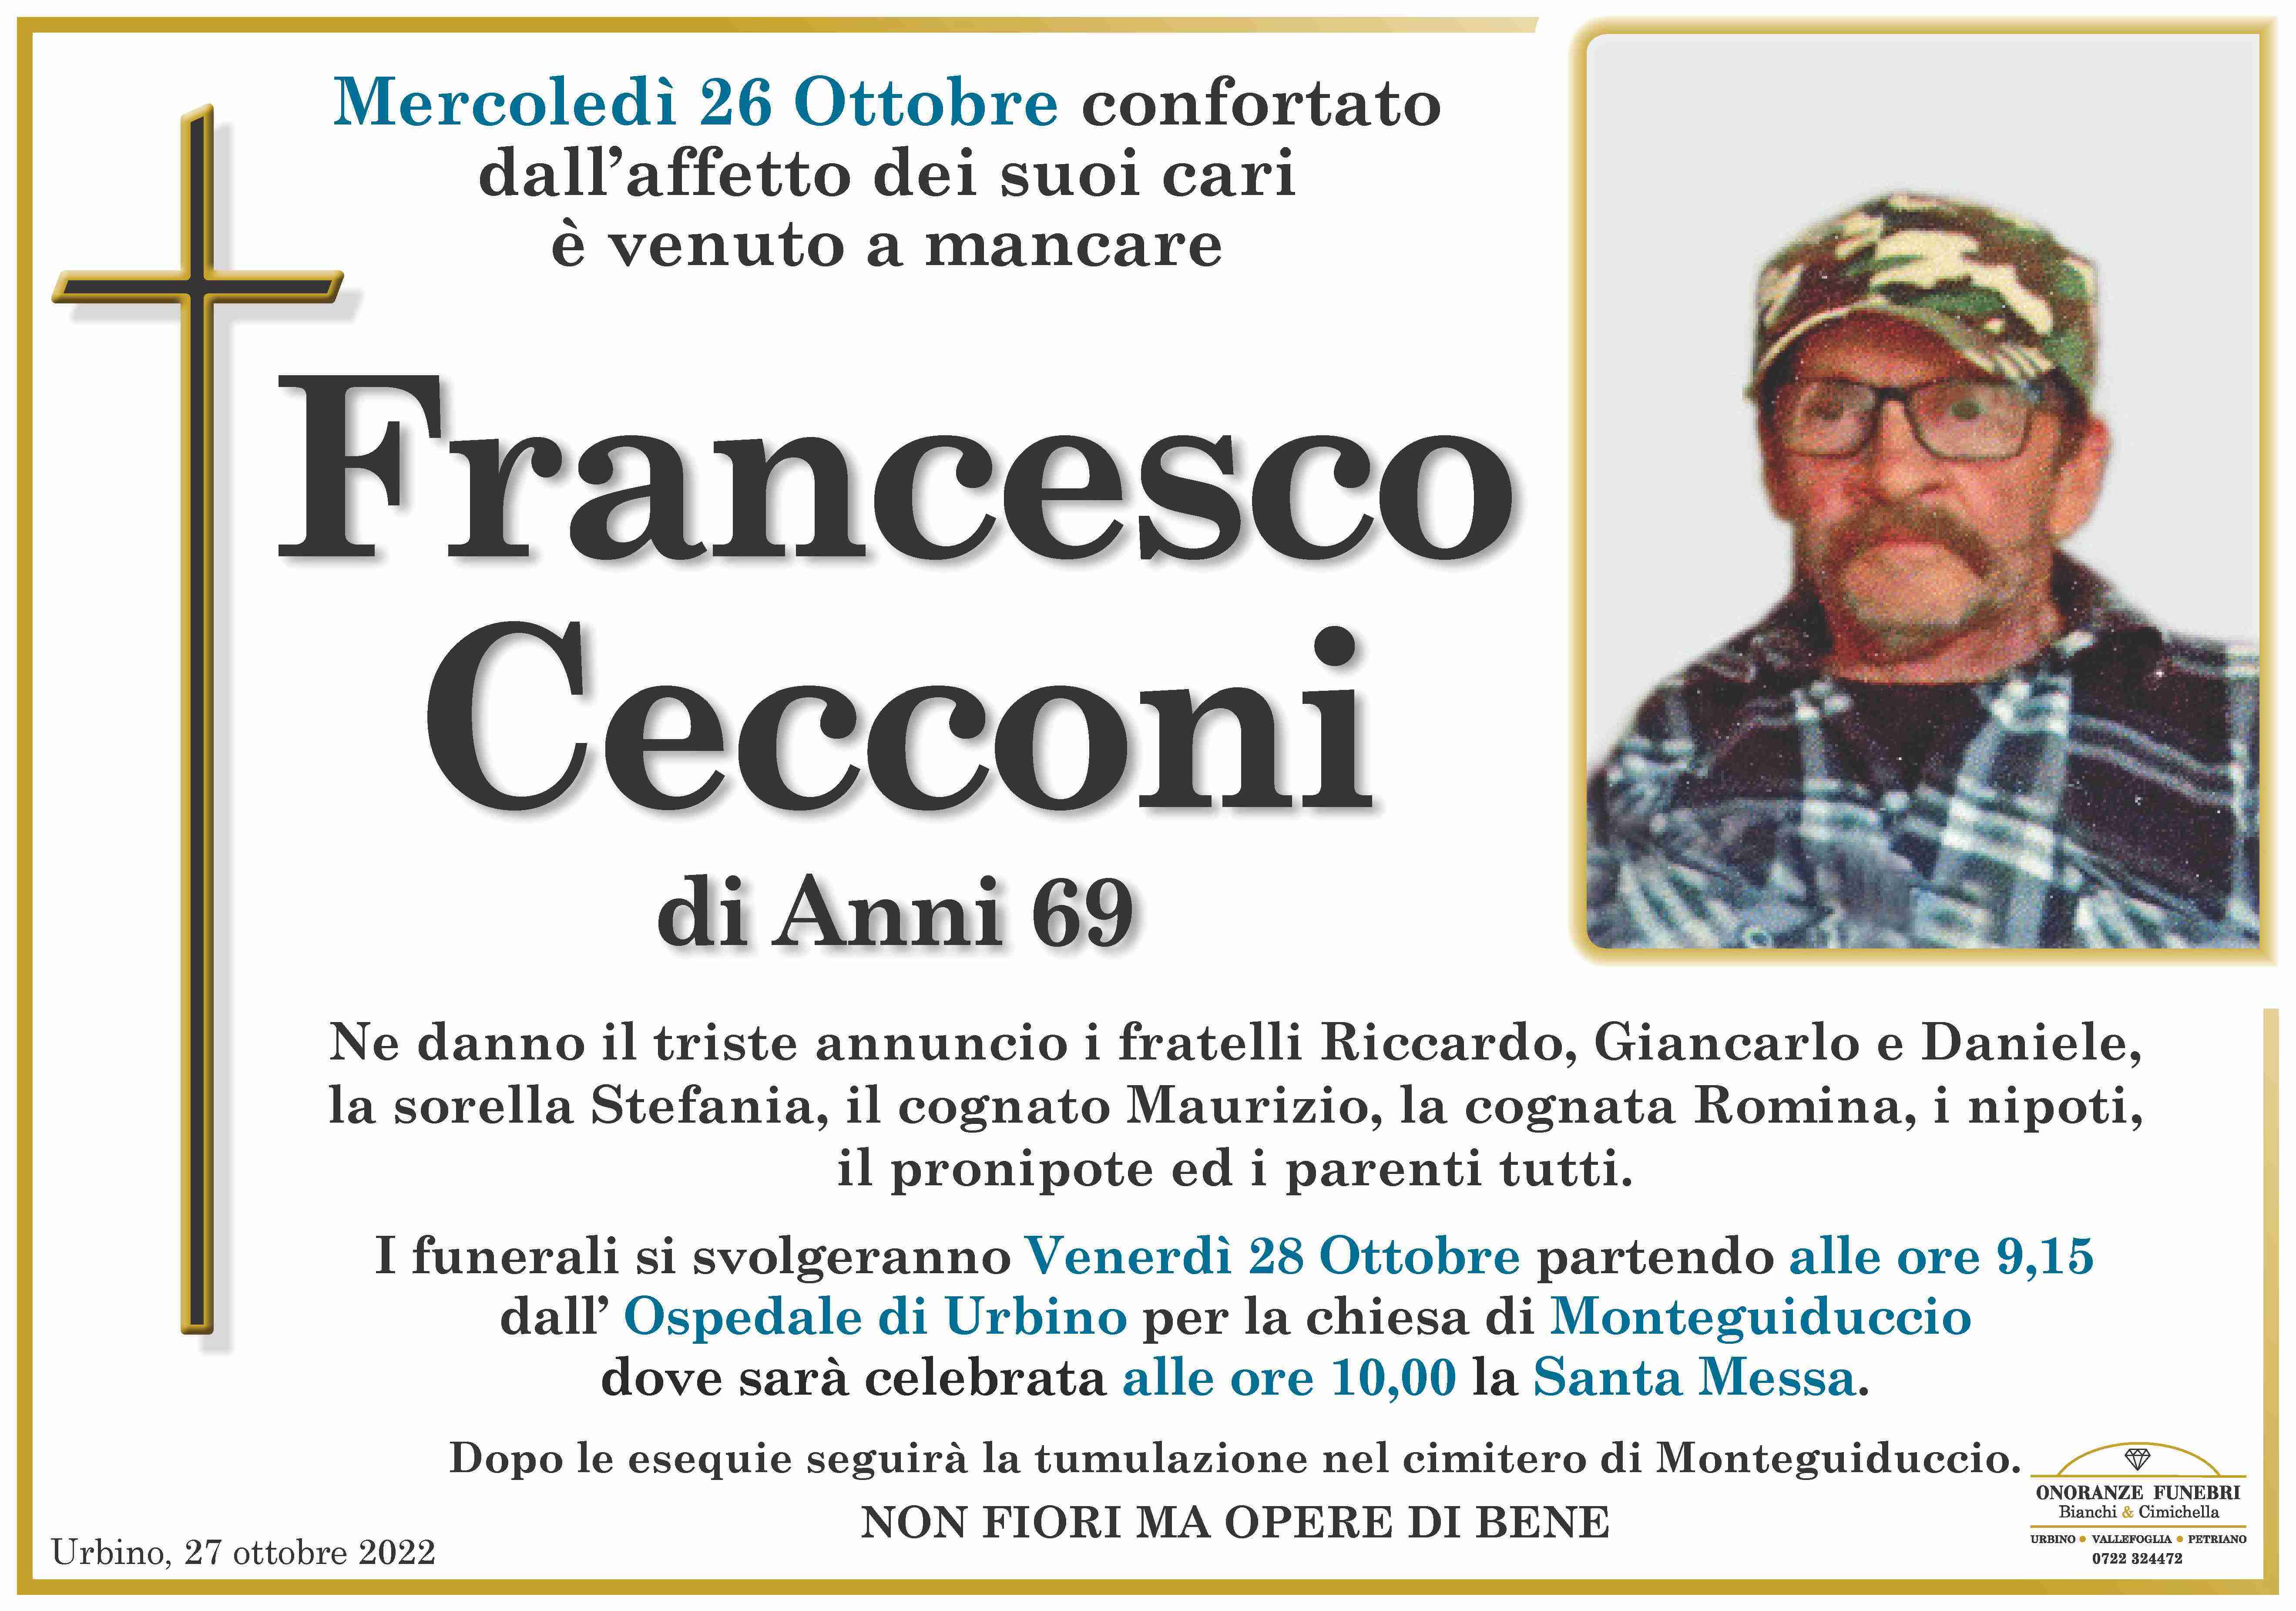 Francesco Cecconi